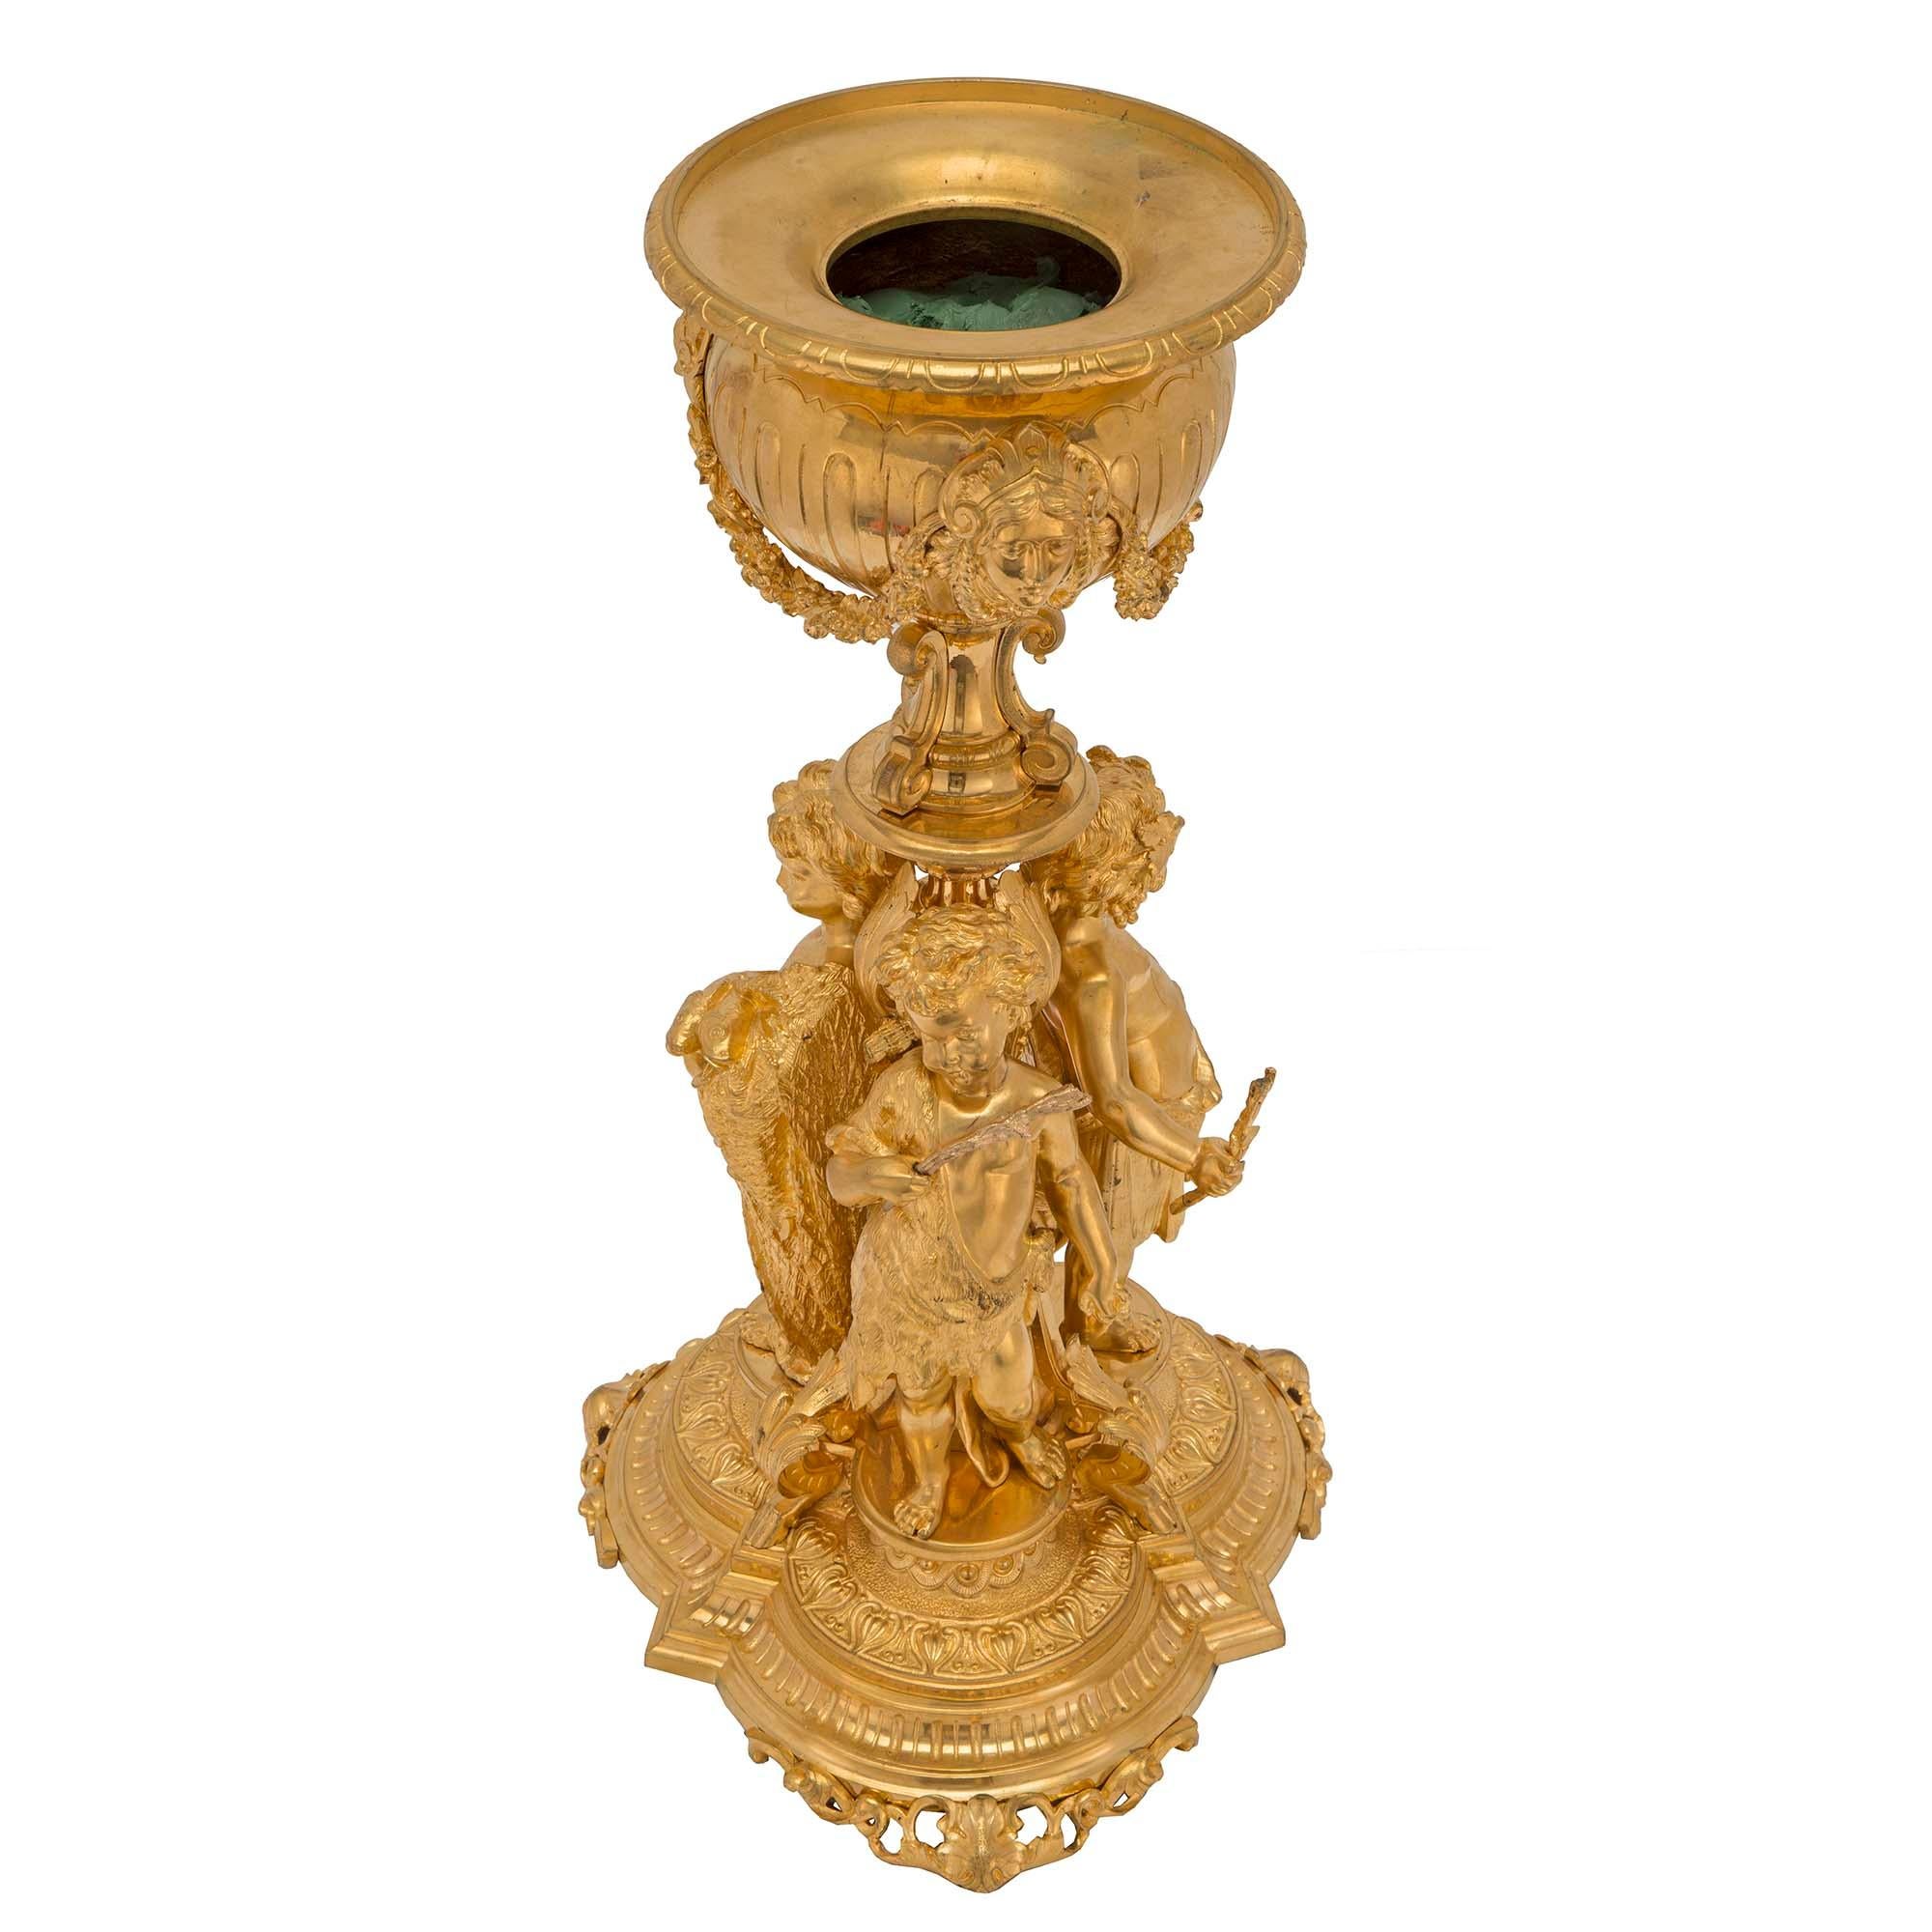 Eine exquisite französische Ormolu-Urne aus dem 19. Jahrhundert im Stil Louis XVI. Die Urne steht auf einem fein ziselierten, gewellten Sockel mit durchbrochenen Füßen. An der Säule sind drei verspielte Putten zu sehen, von denen eine als Jäger mit